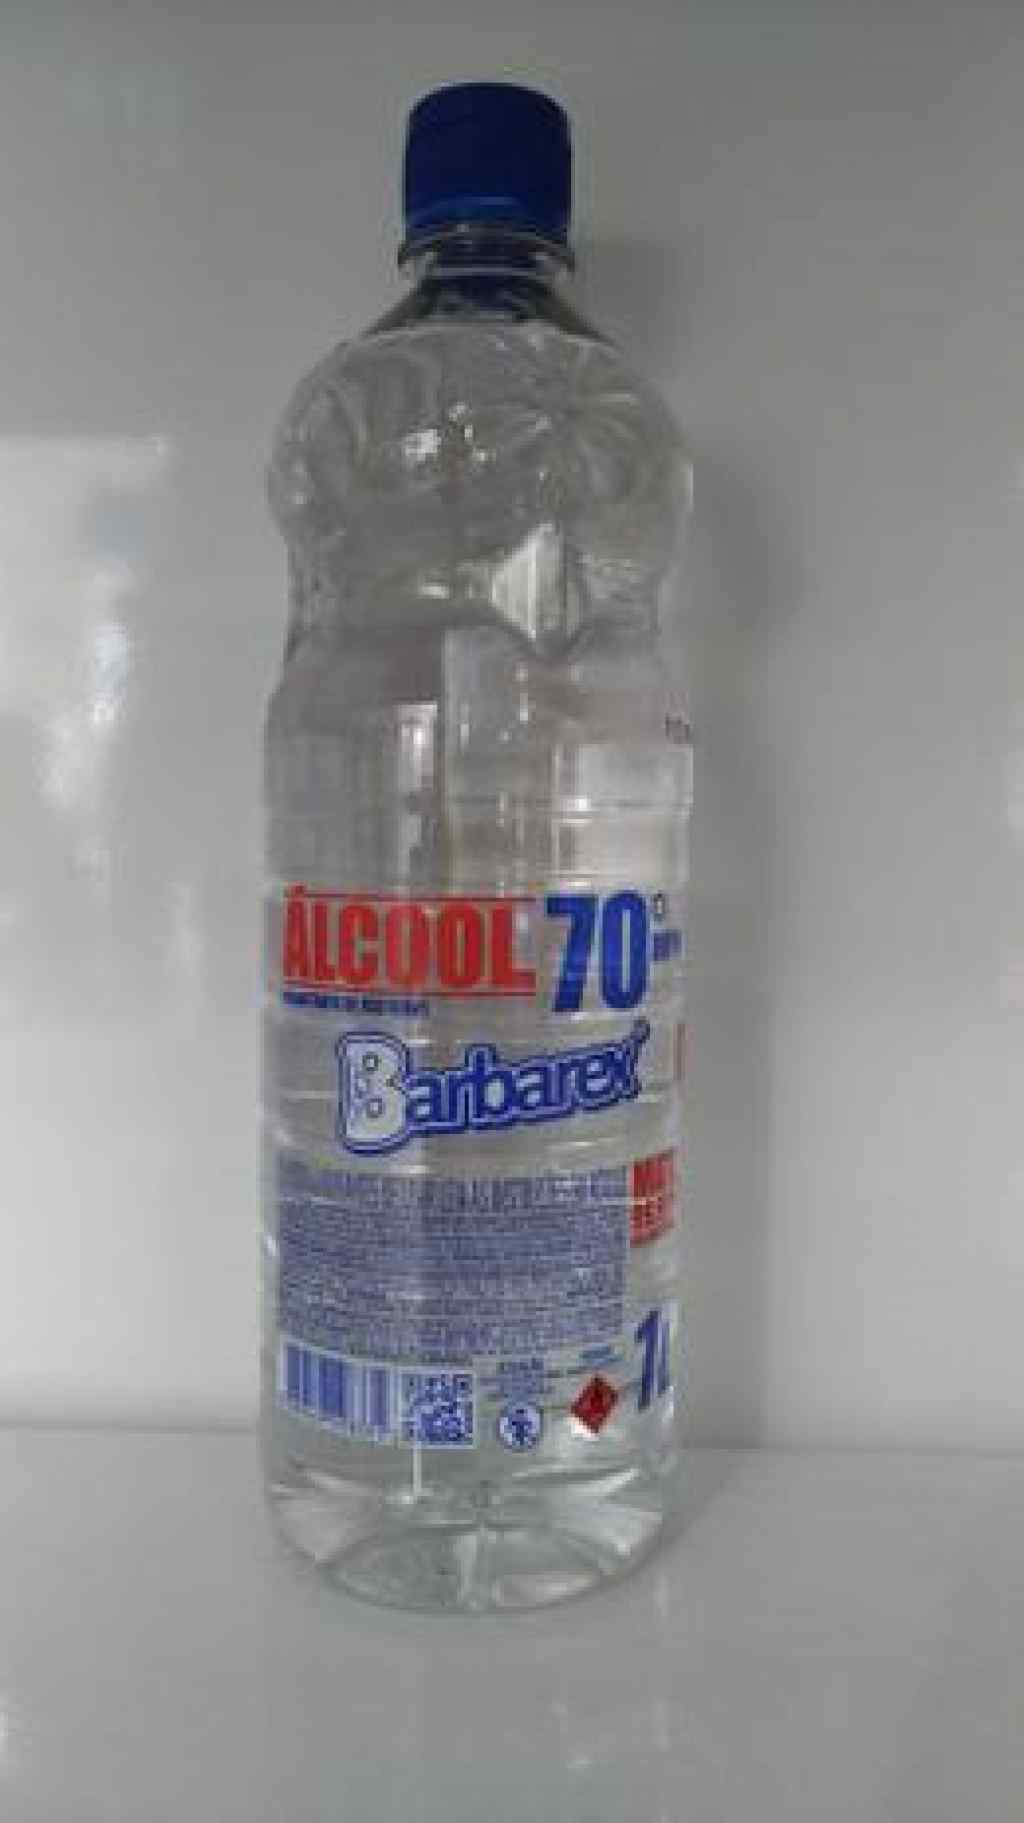 Amparar BH - Alcool 70 % liquido 1 litro - barbarex - 